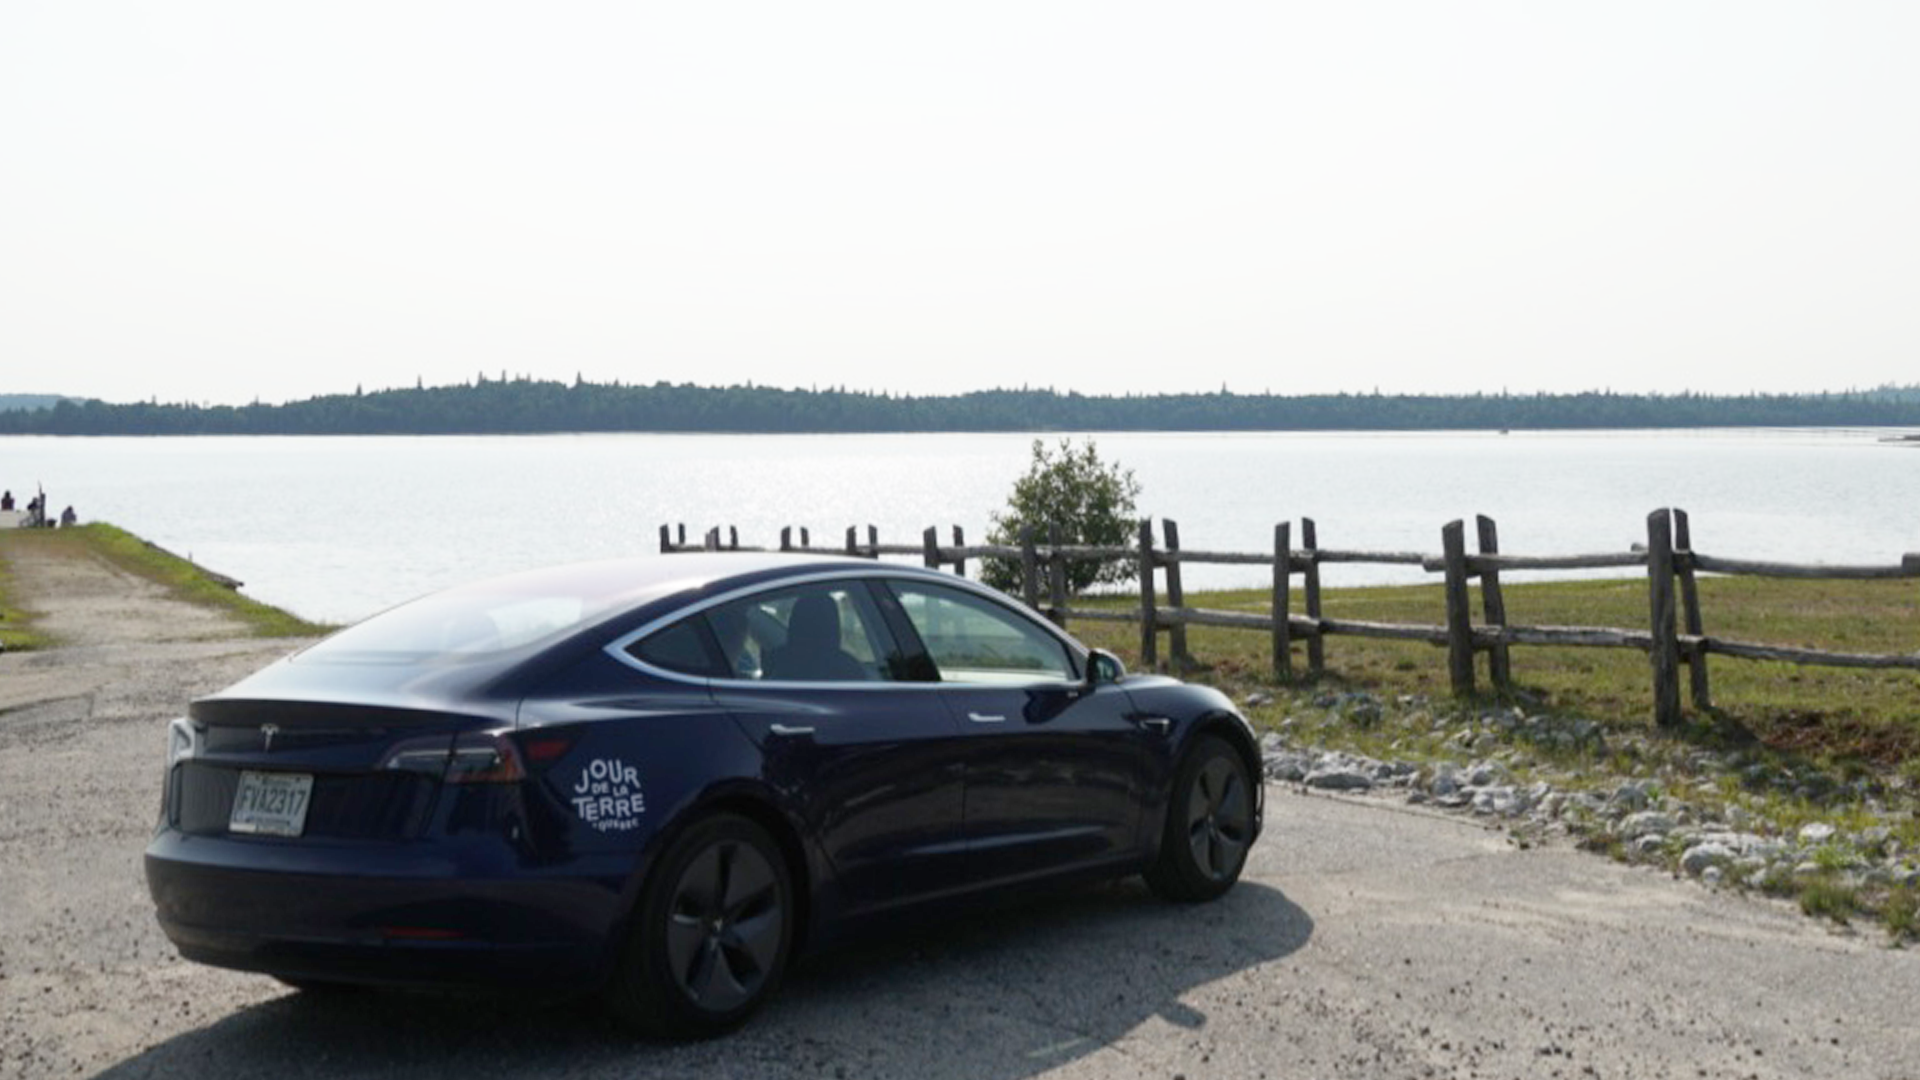 Road Trip Électrique à Bord de la Tesla Model 3 article 2 extérieur Tesla